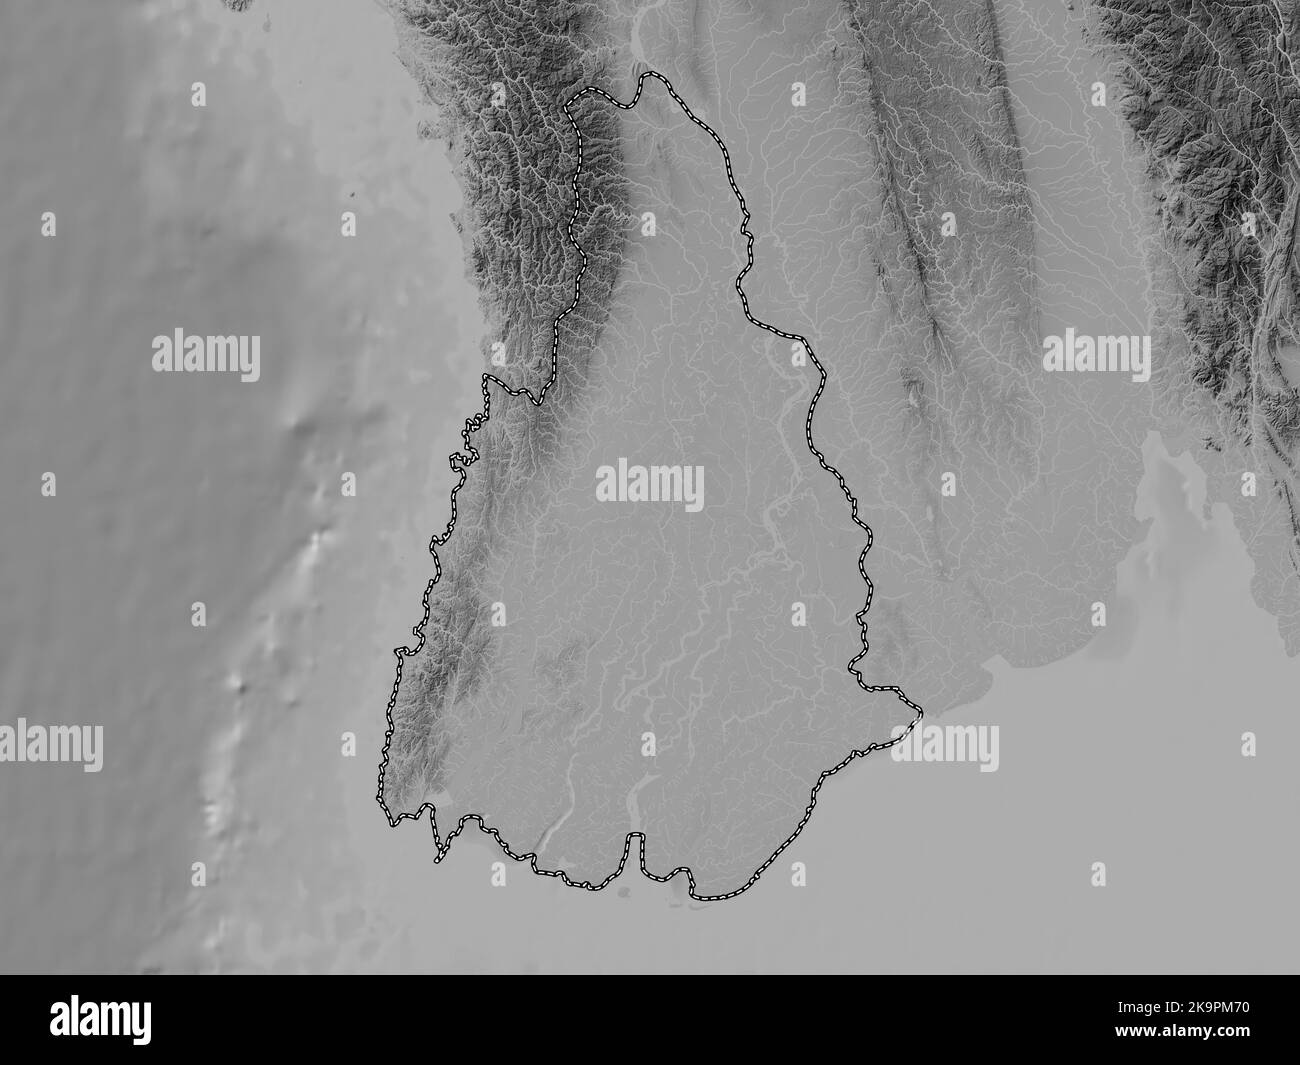 Ayeyarwady, Division von Myanmar. Höhenkarte in Graustufen mit Seen und Flüssen Stockfoto